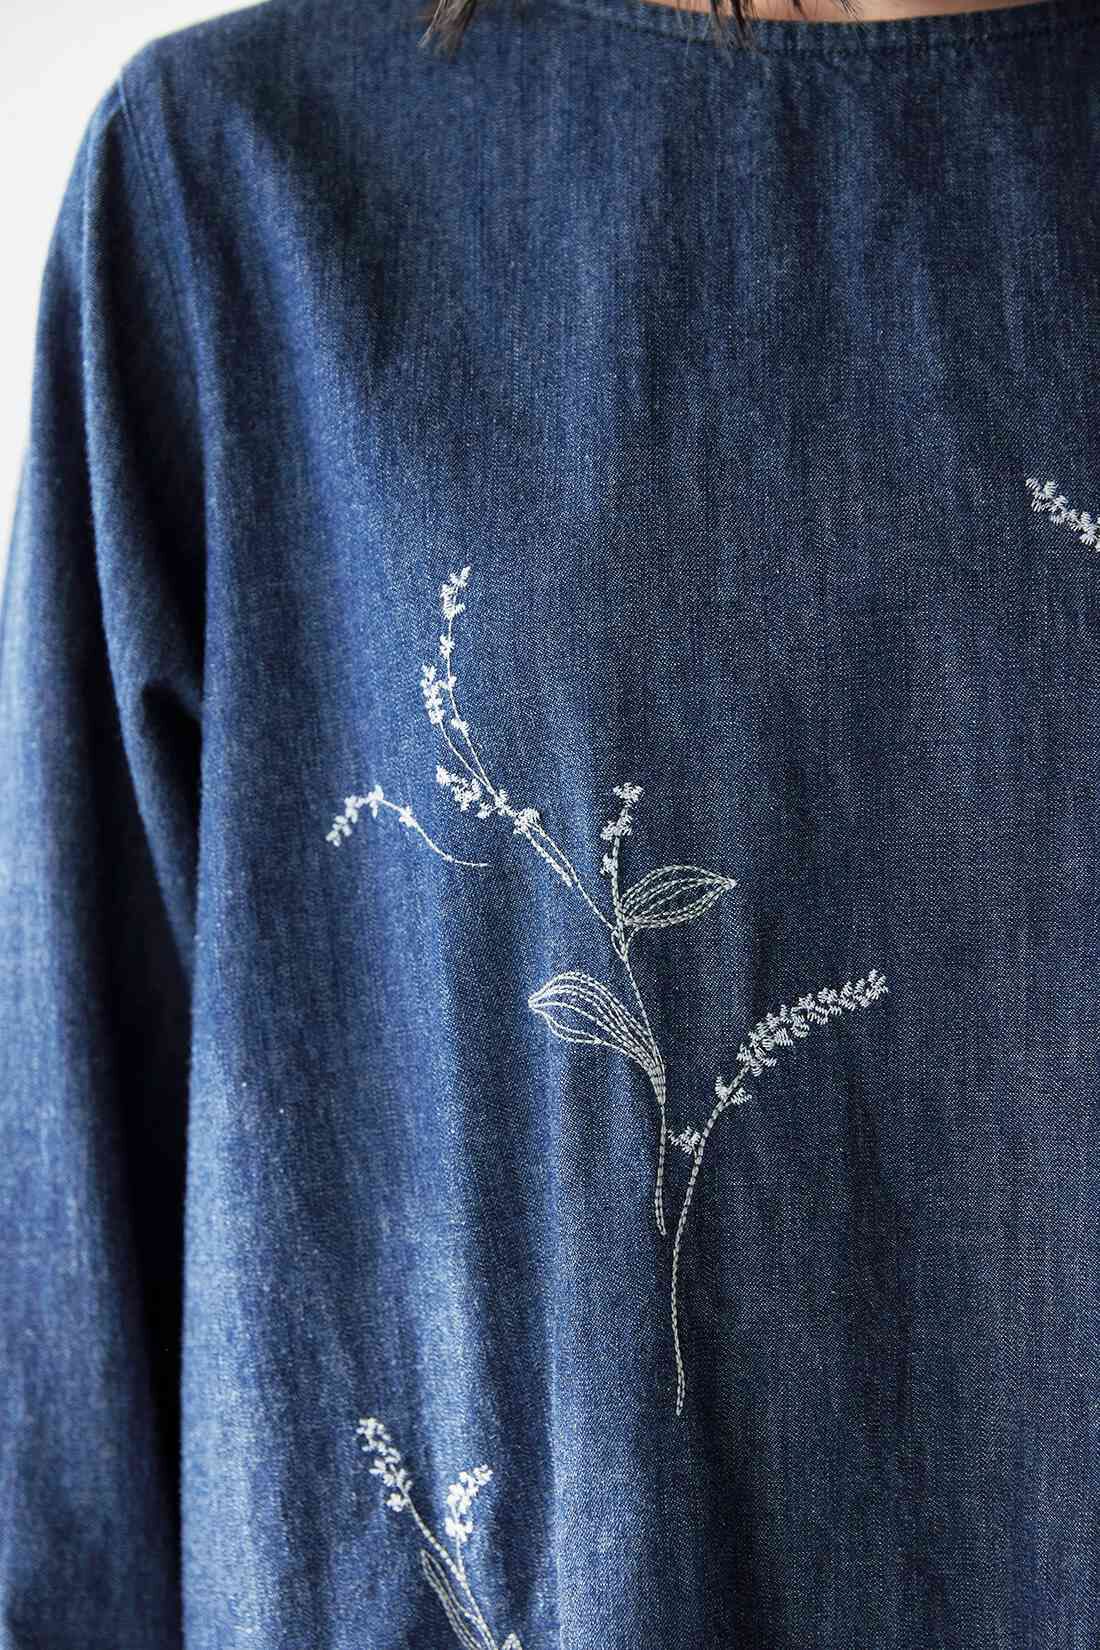 袖丈長袖【 グドゥリー(刺し子) ジャケット 】藍染刺しゅう布で作ったジャケットブラウス